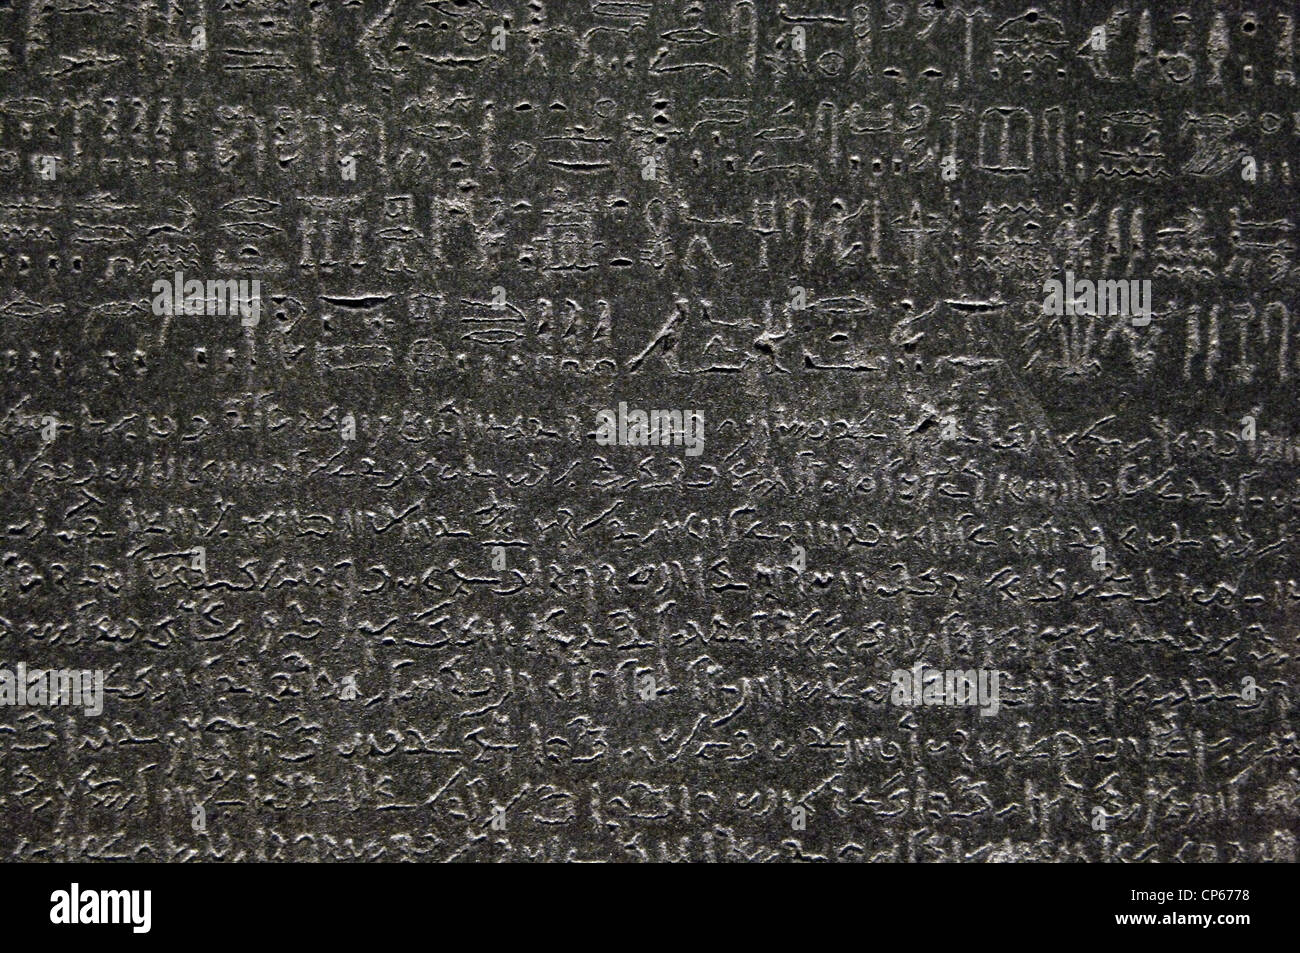 La Rosetta Stone. Epoca tolemaica. 196 BC. Hieroglyphical demotic e scrittura. Dettaglio. Foto Stock